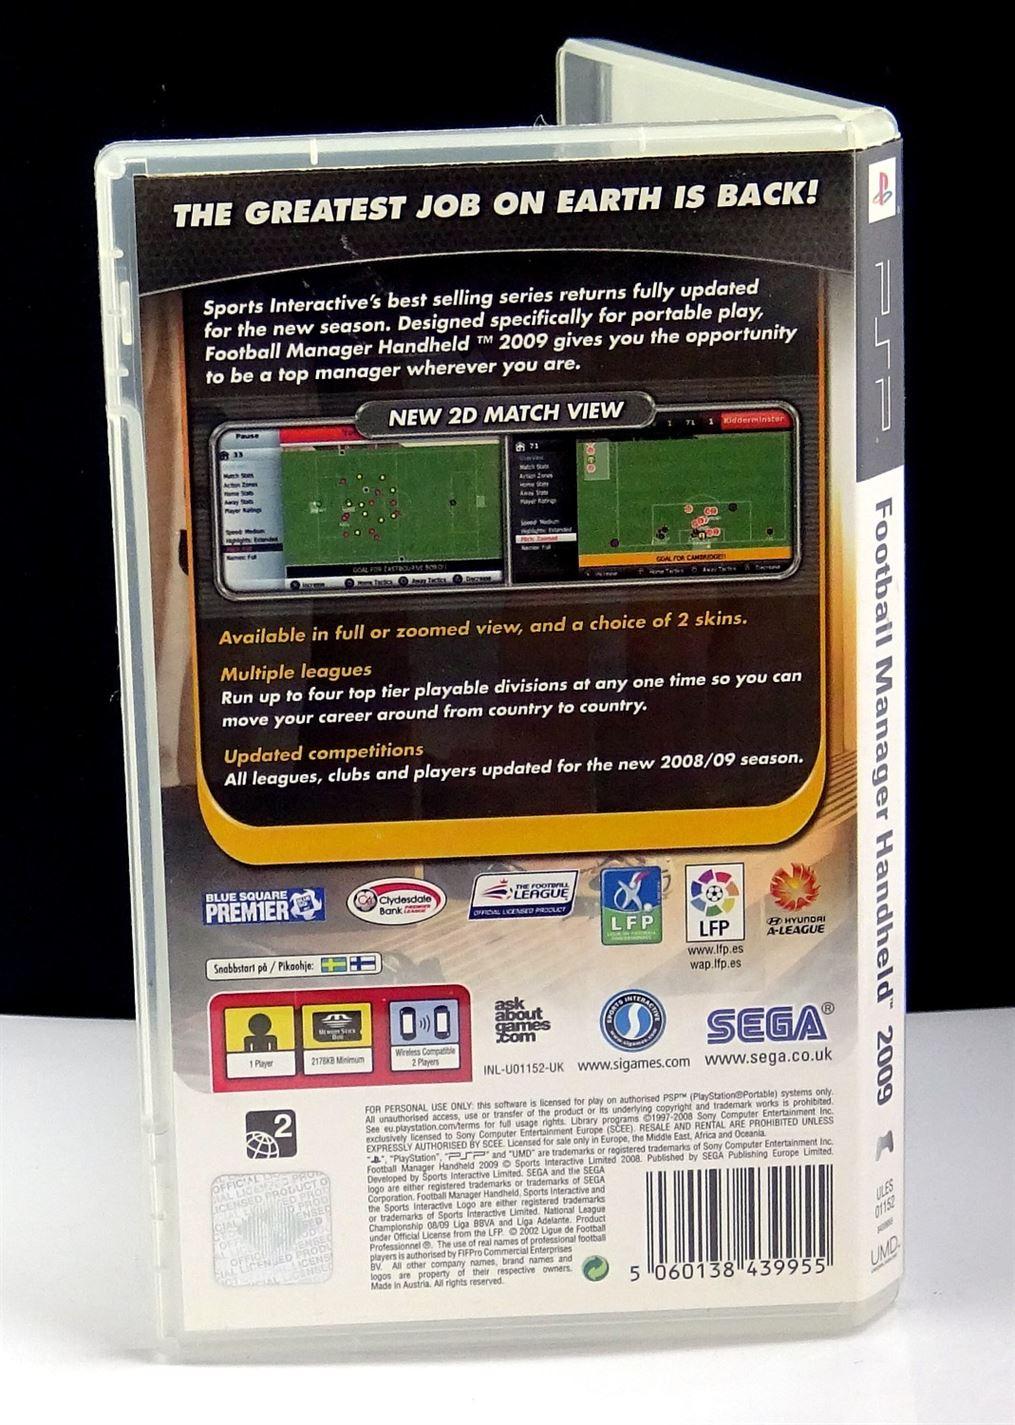 Football Manager Handheld 2009 (PSP) - UK Seller